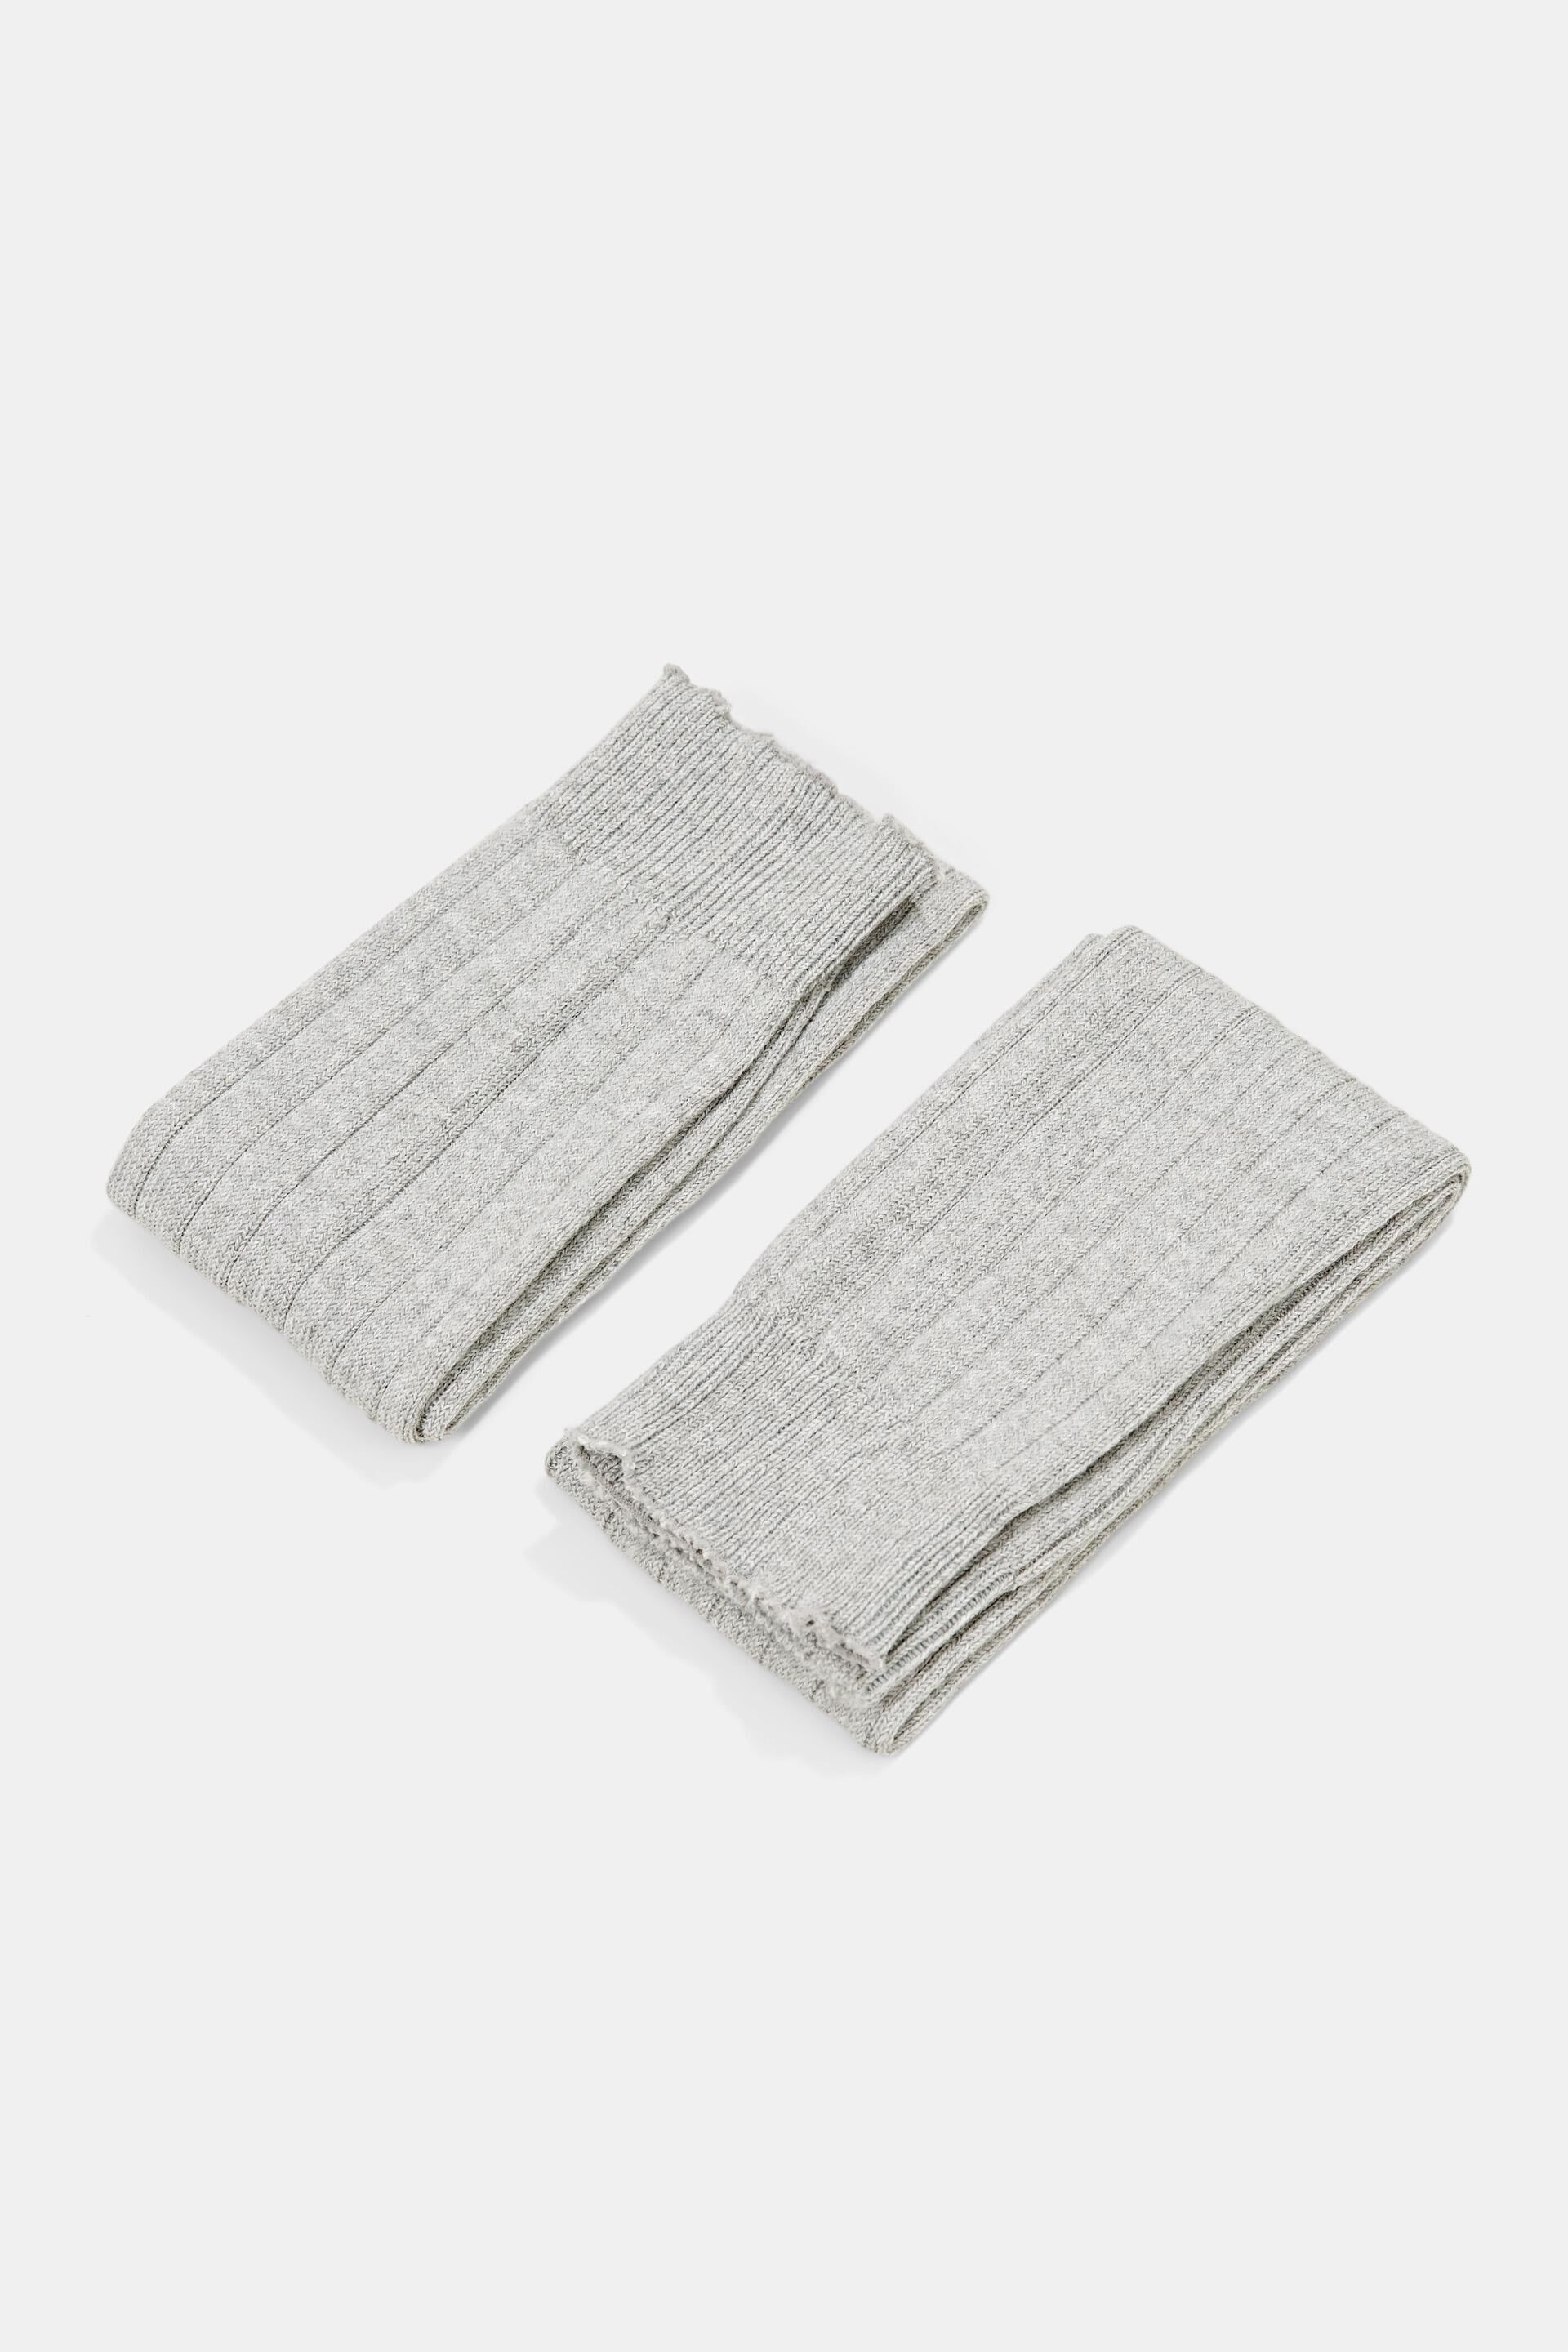 Esprit Online Store Wool blend: rib knit warmers leg